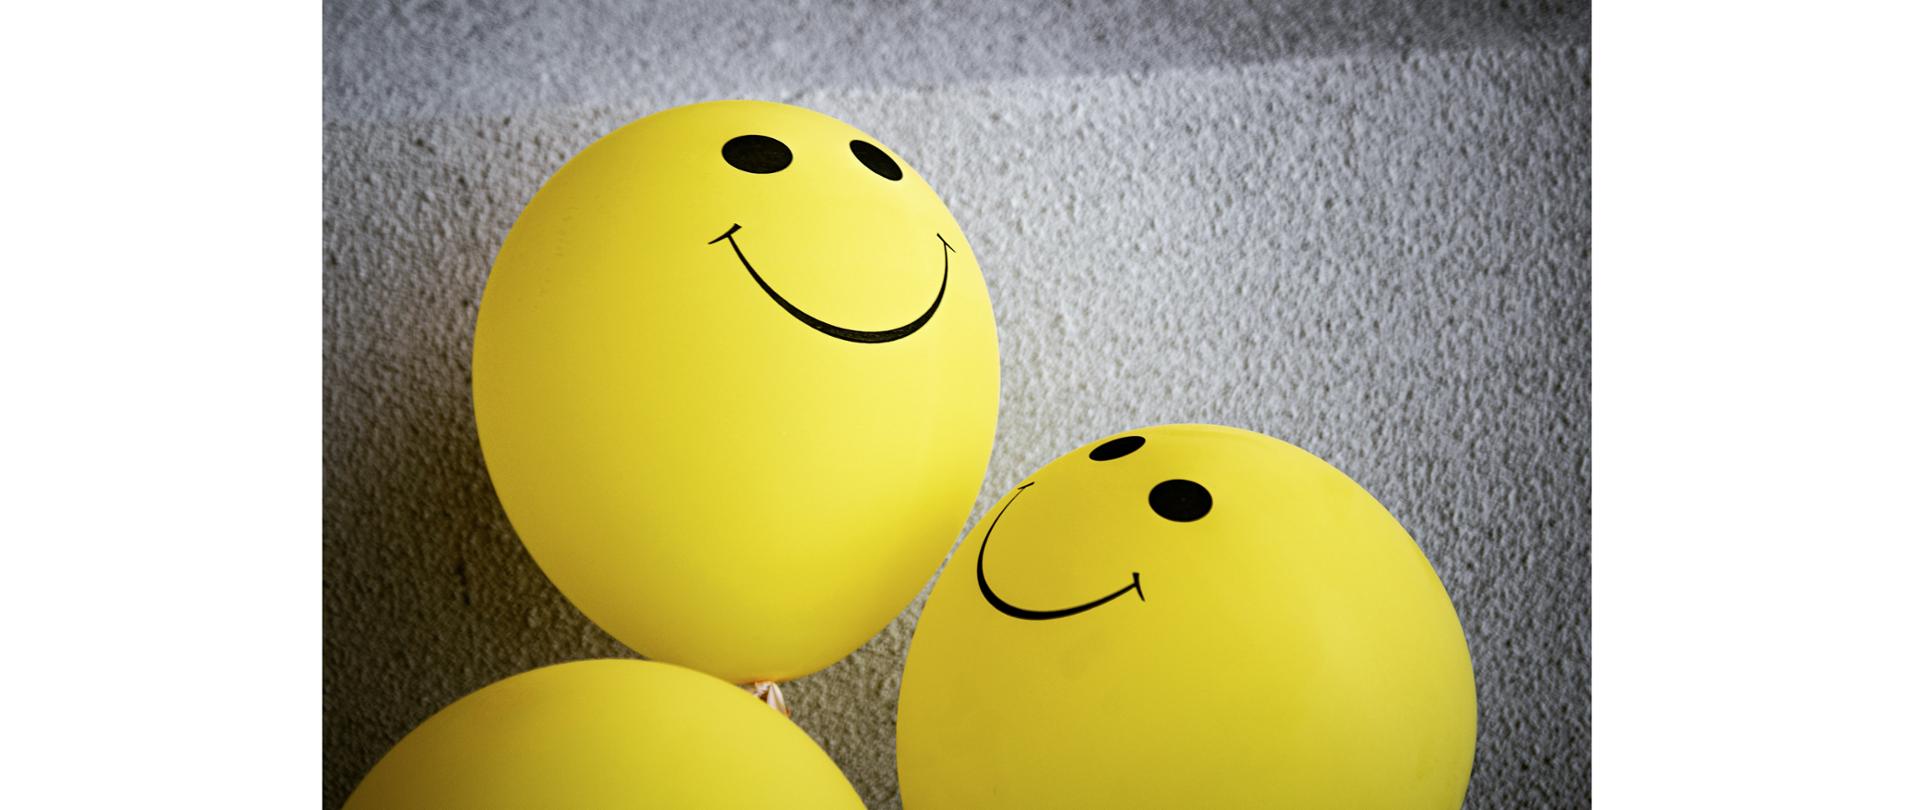 żółte balony z czarnymi oczkami i uśmiechem leżące na dywanie imitujące emotikony